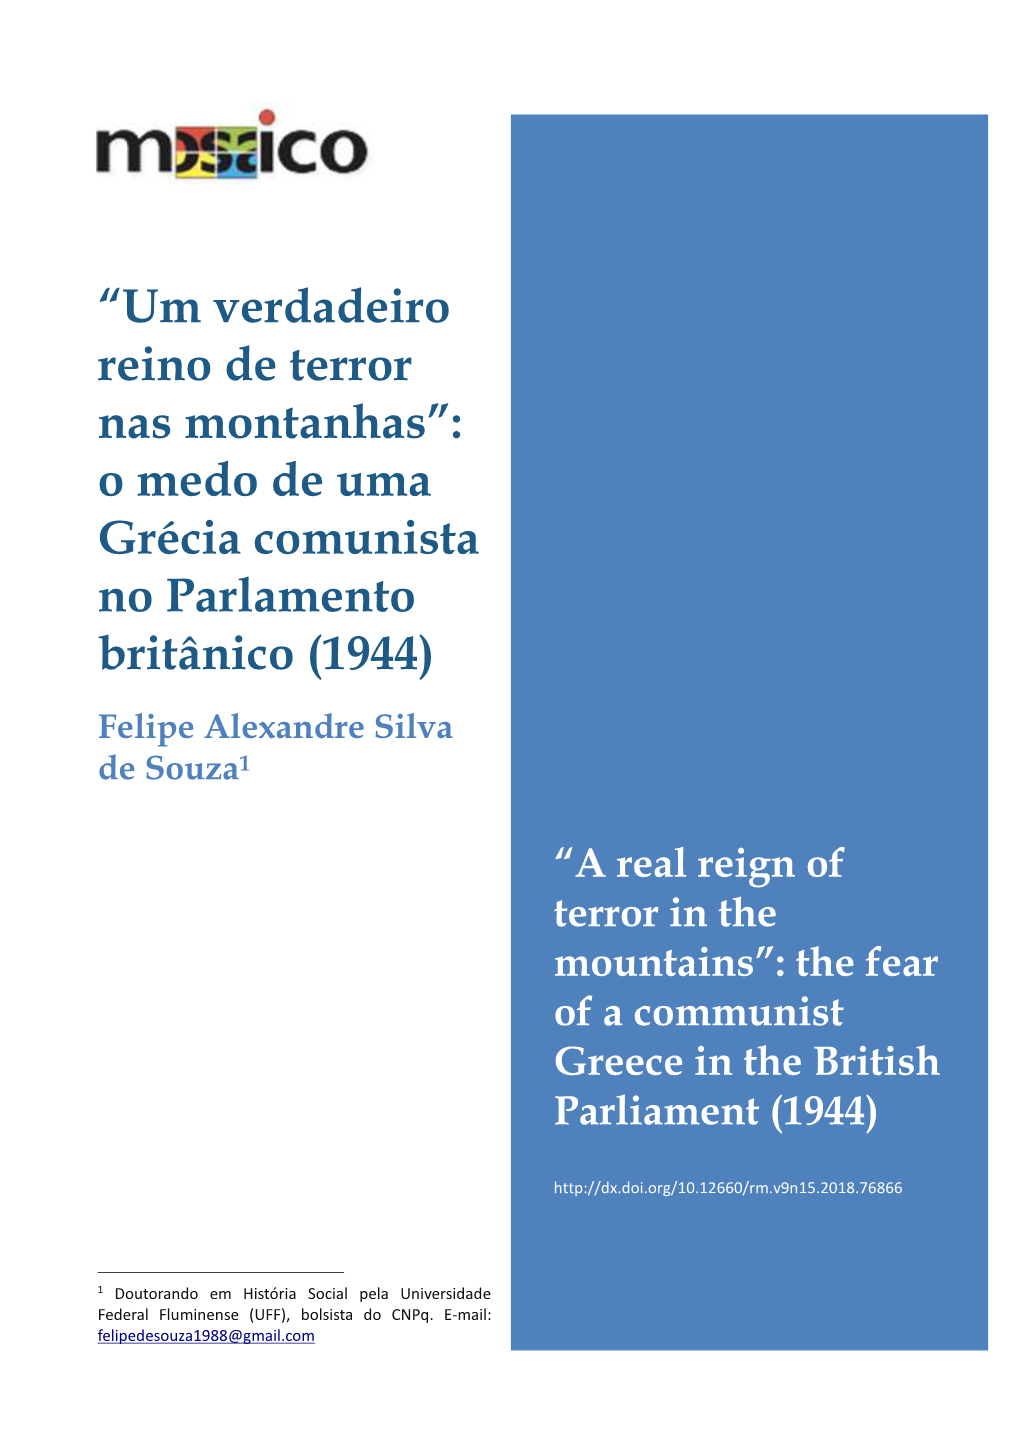 O Medo De Uma Grécia Comunista No Parlamento Britânico (1944) Felipe Alexandre Silva De Souza1